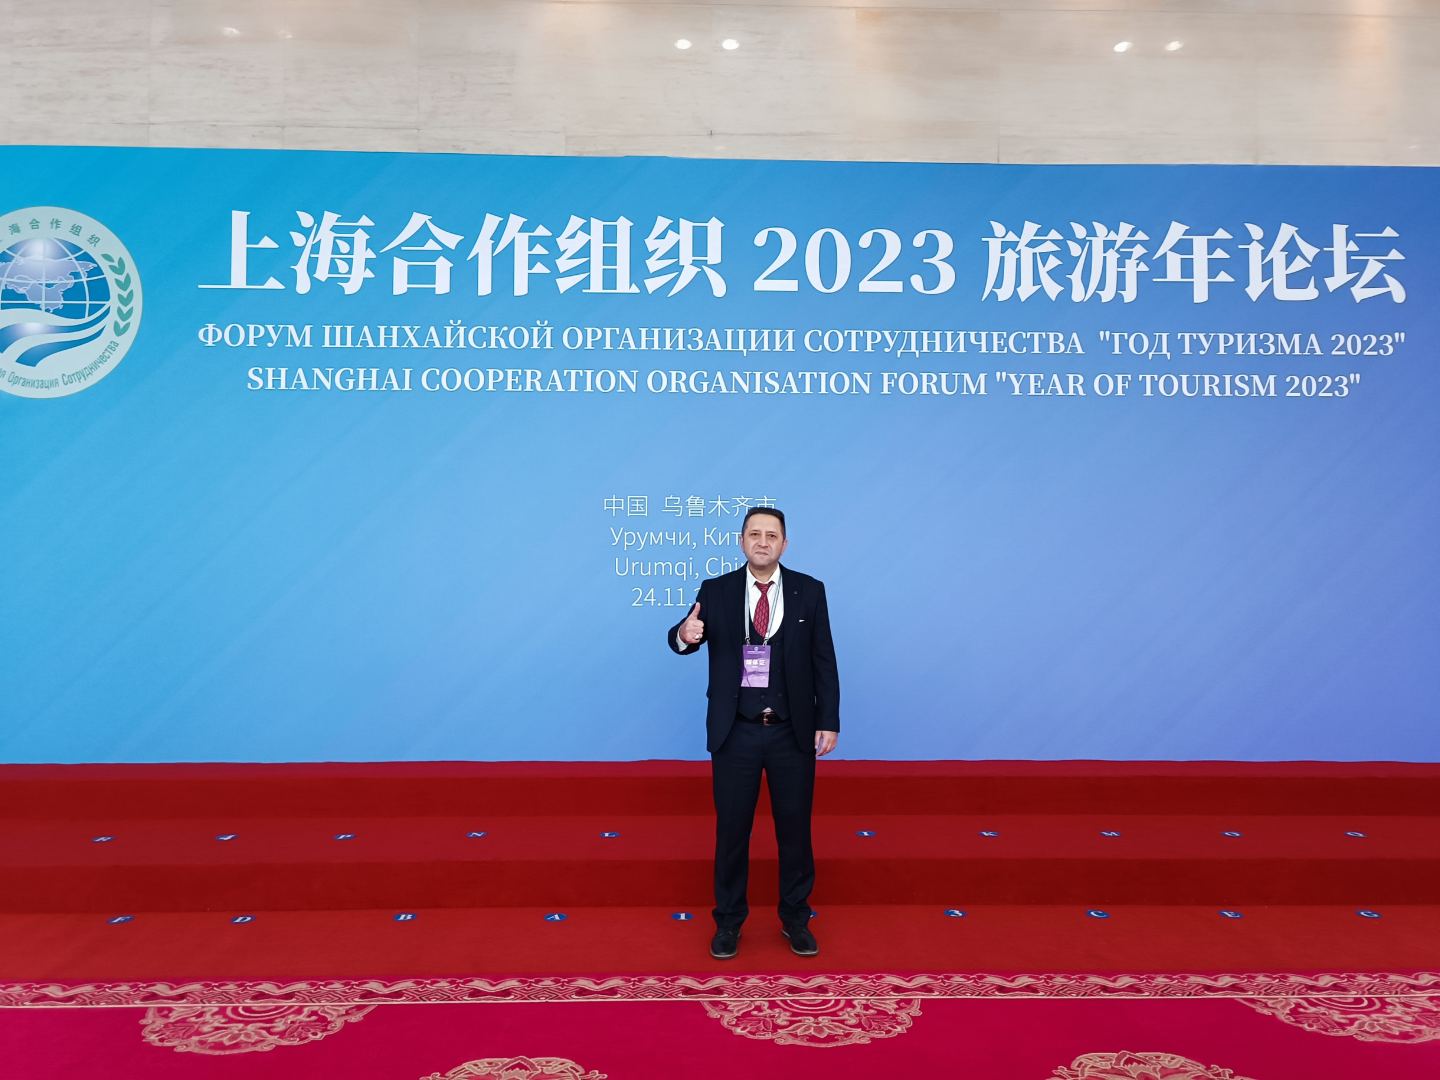 China's Urumqi inaugurates SCO Forum "Year of Tourism 2023" (PHOTO)